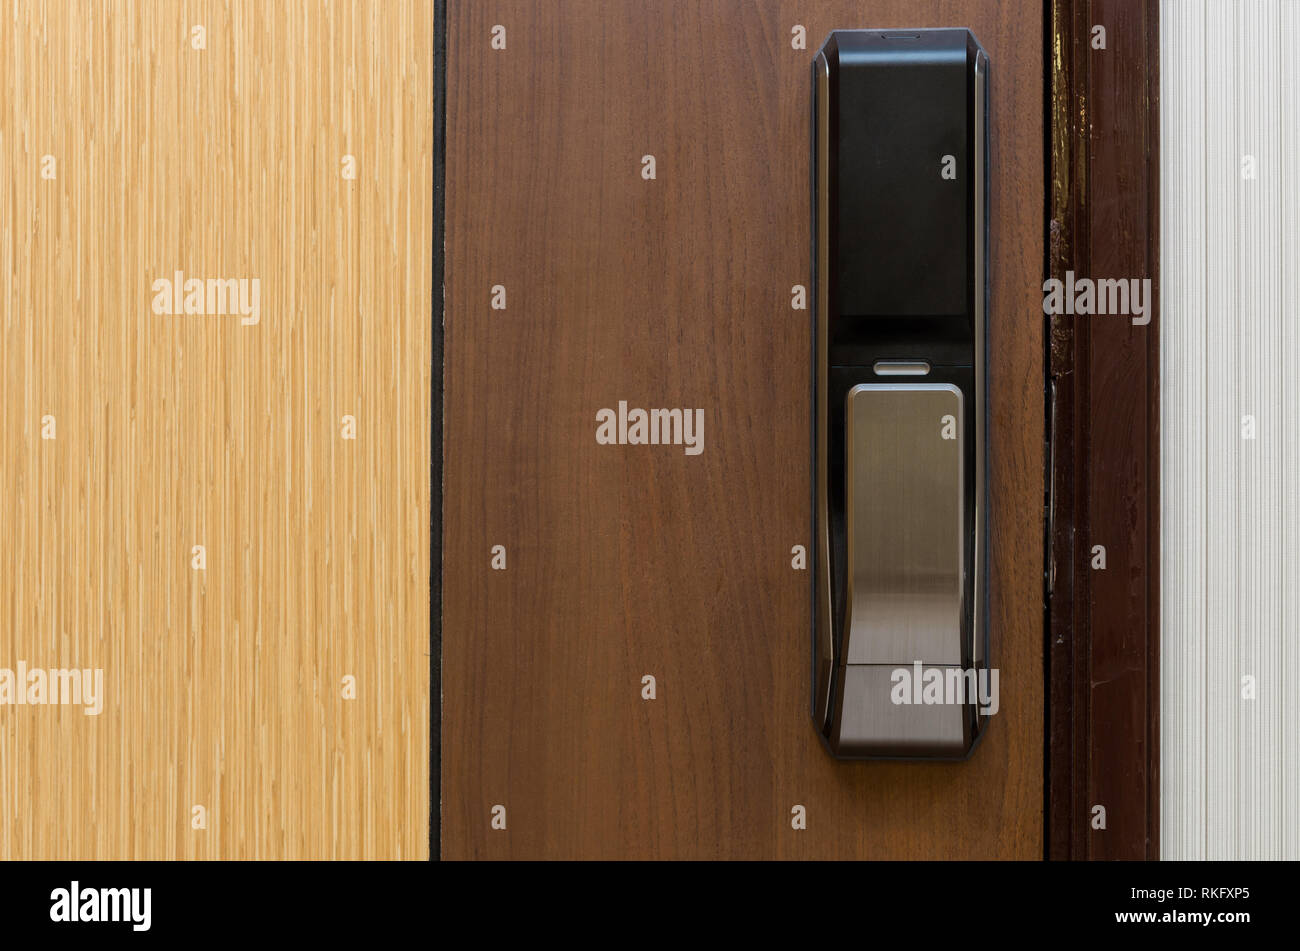 Digital door lock on wooden door Stock Photo